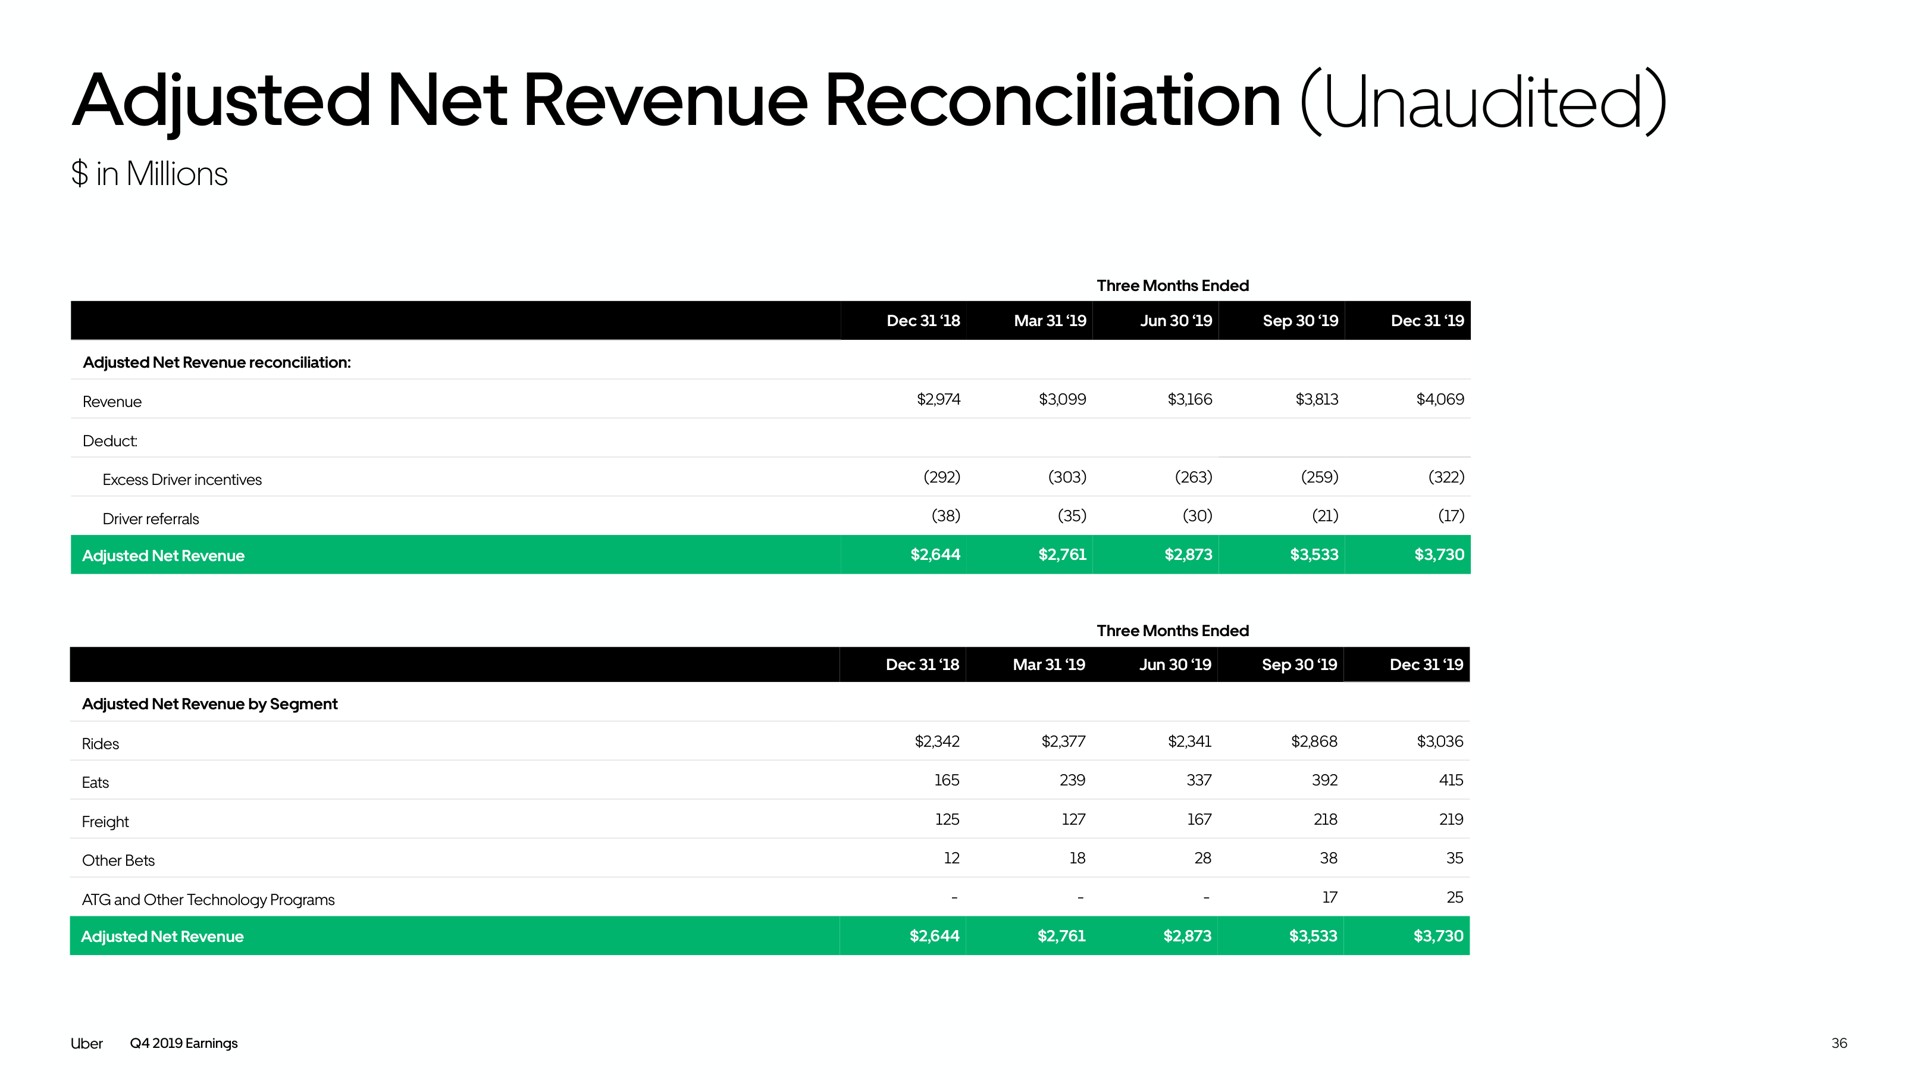 adjusted net revenue reconciliation unaudited | Uber